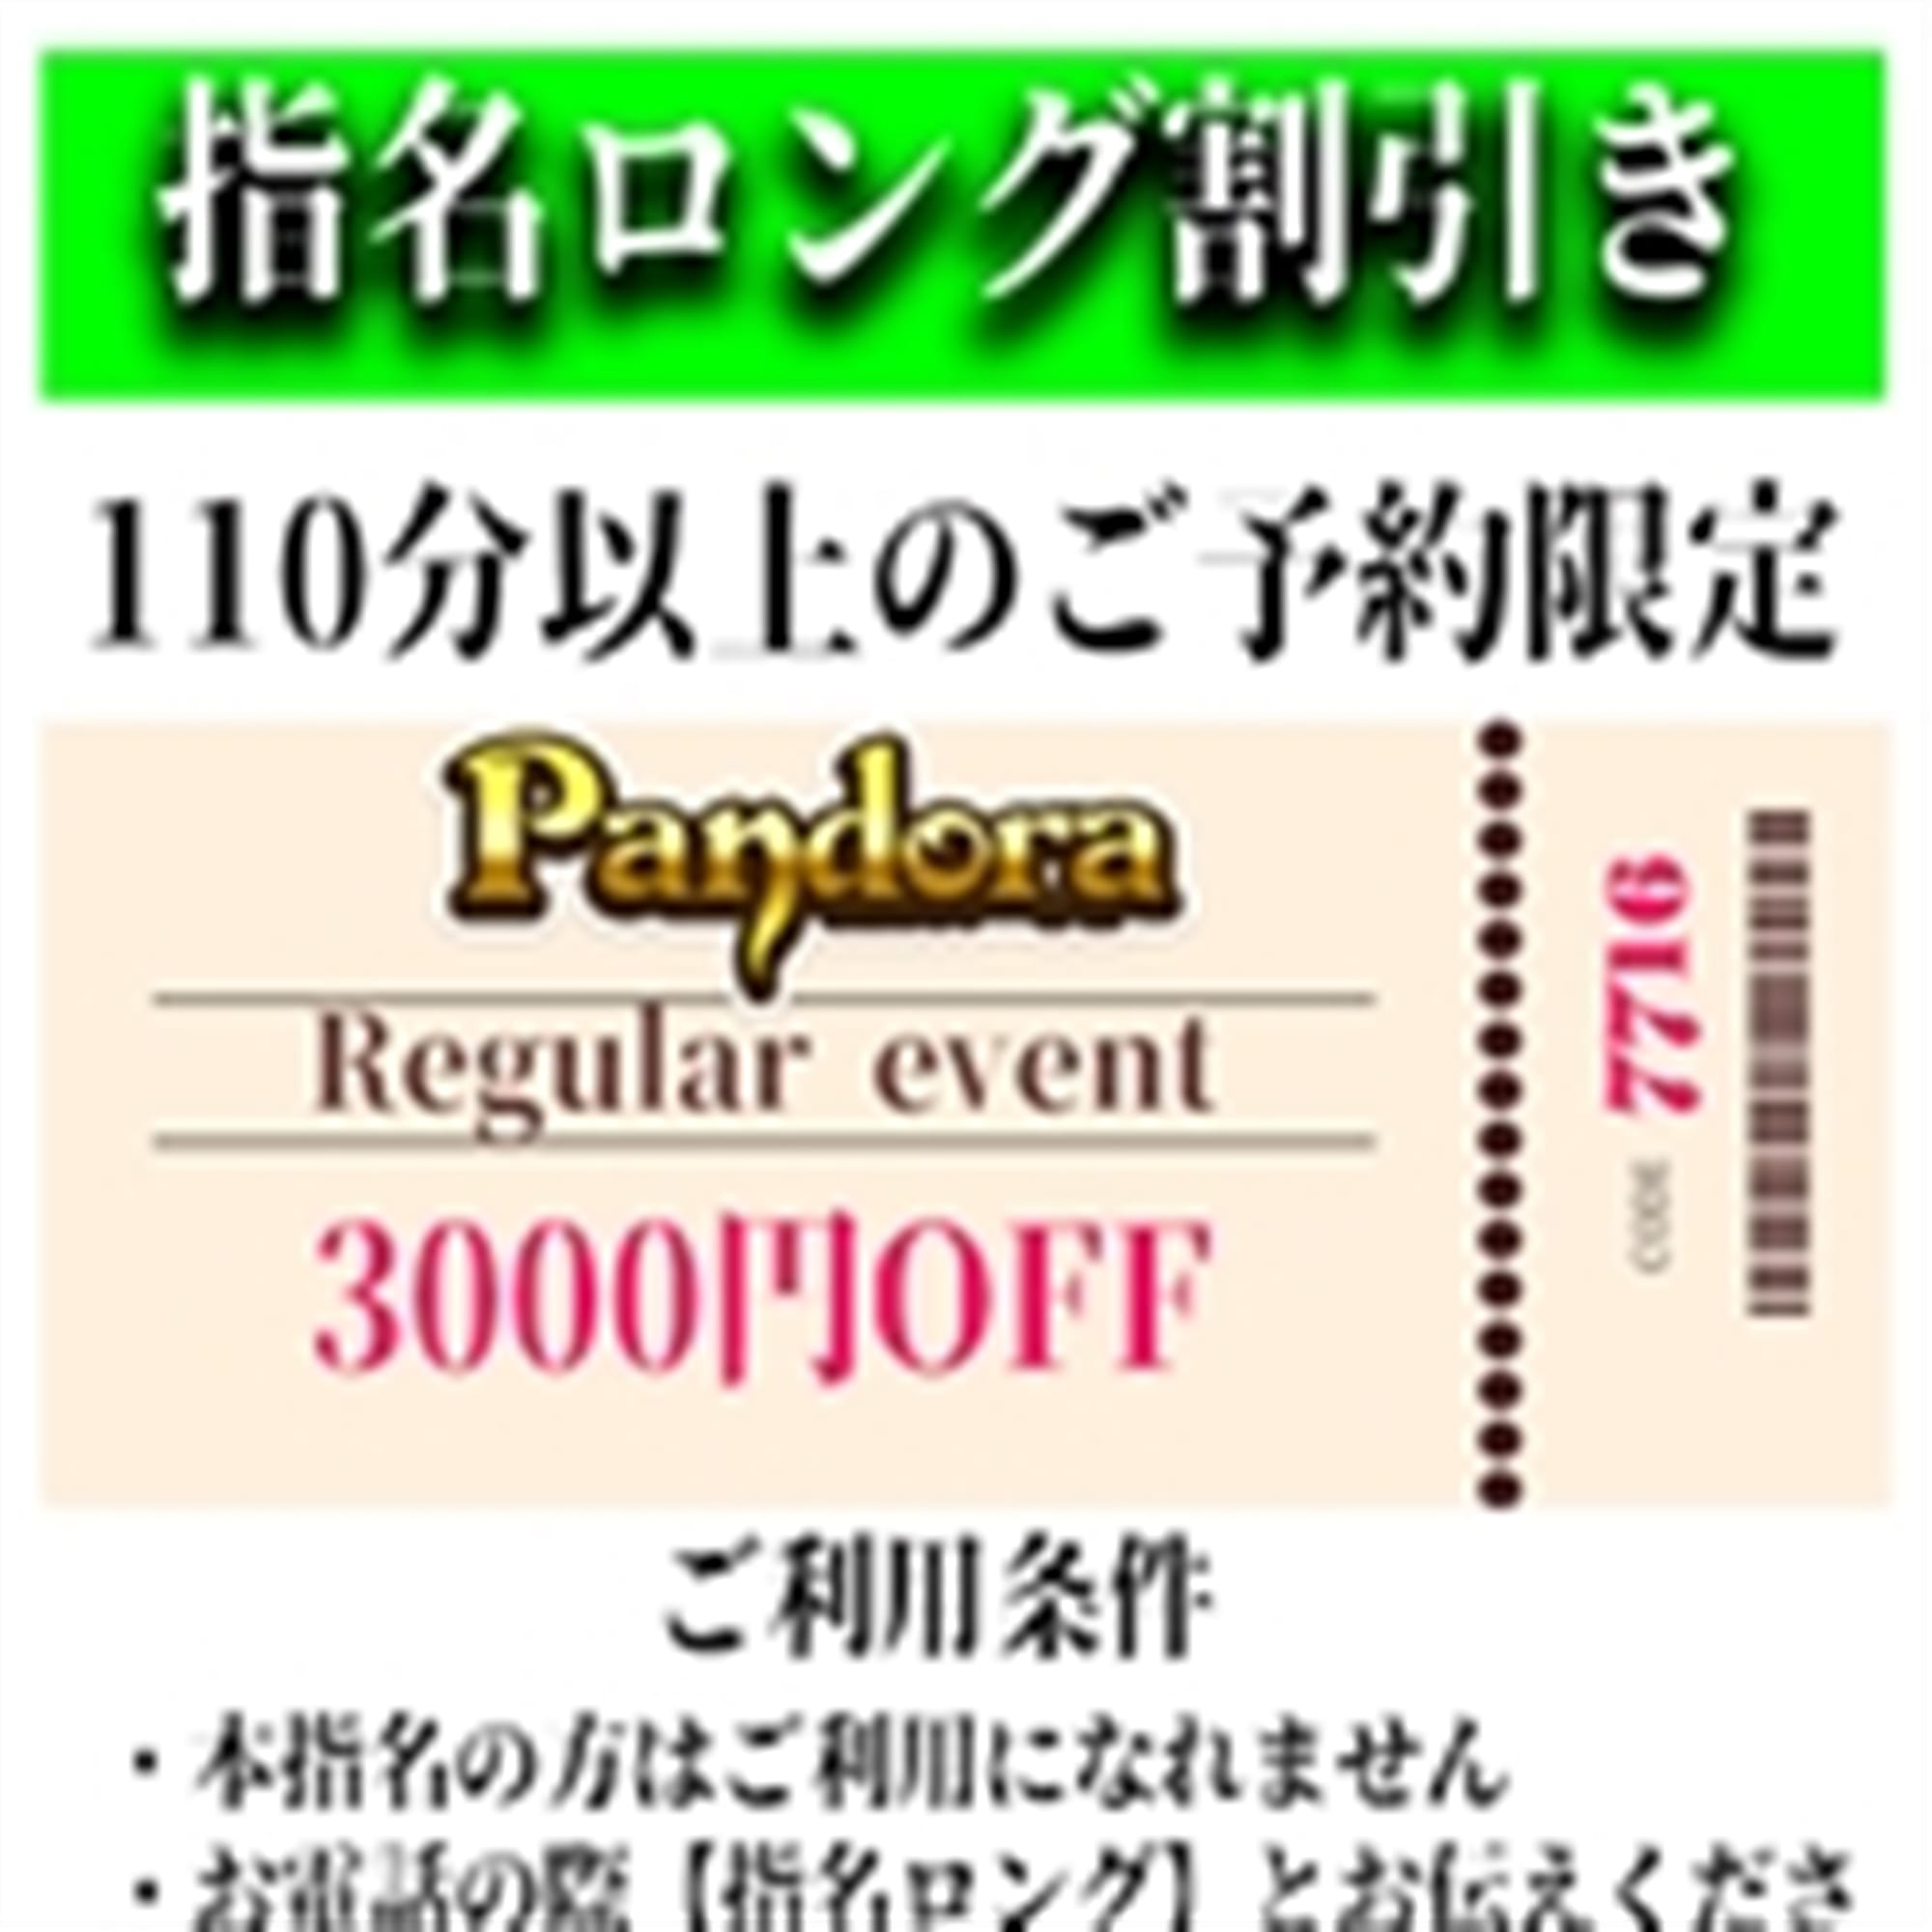 「ご指名のお客様も遊べるロングコース割引」04/17(水) 11:13 | Pandora(パンドラ)新潟のお得なニュース